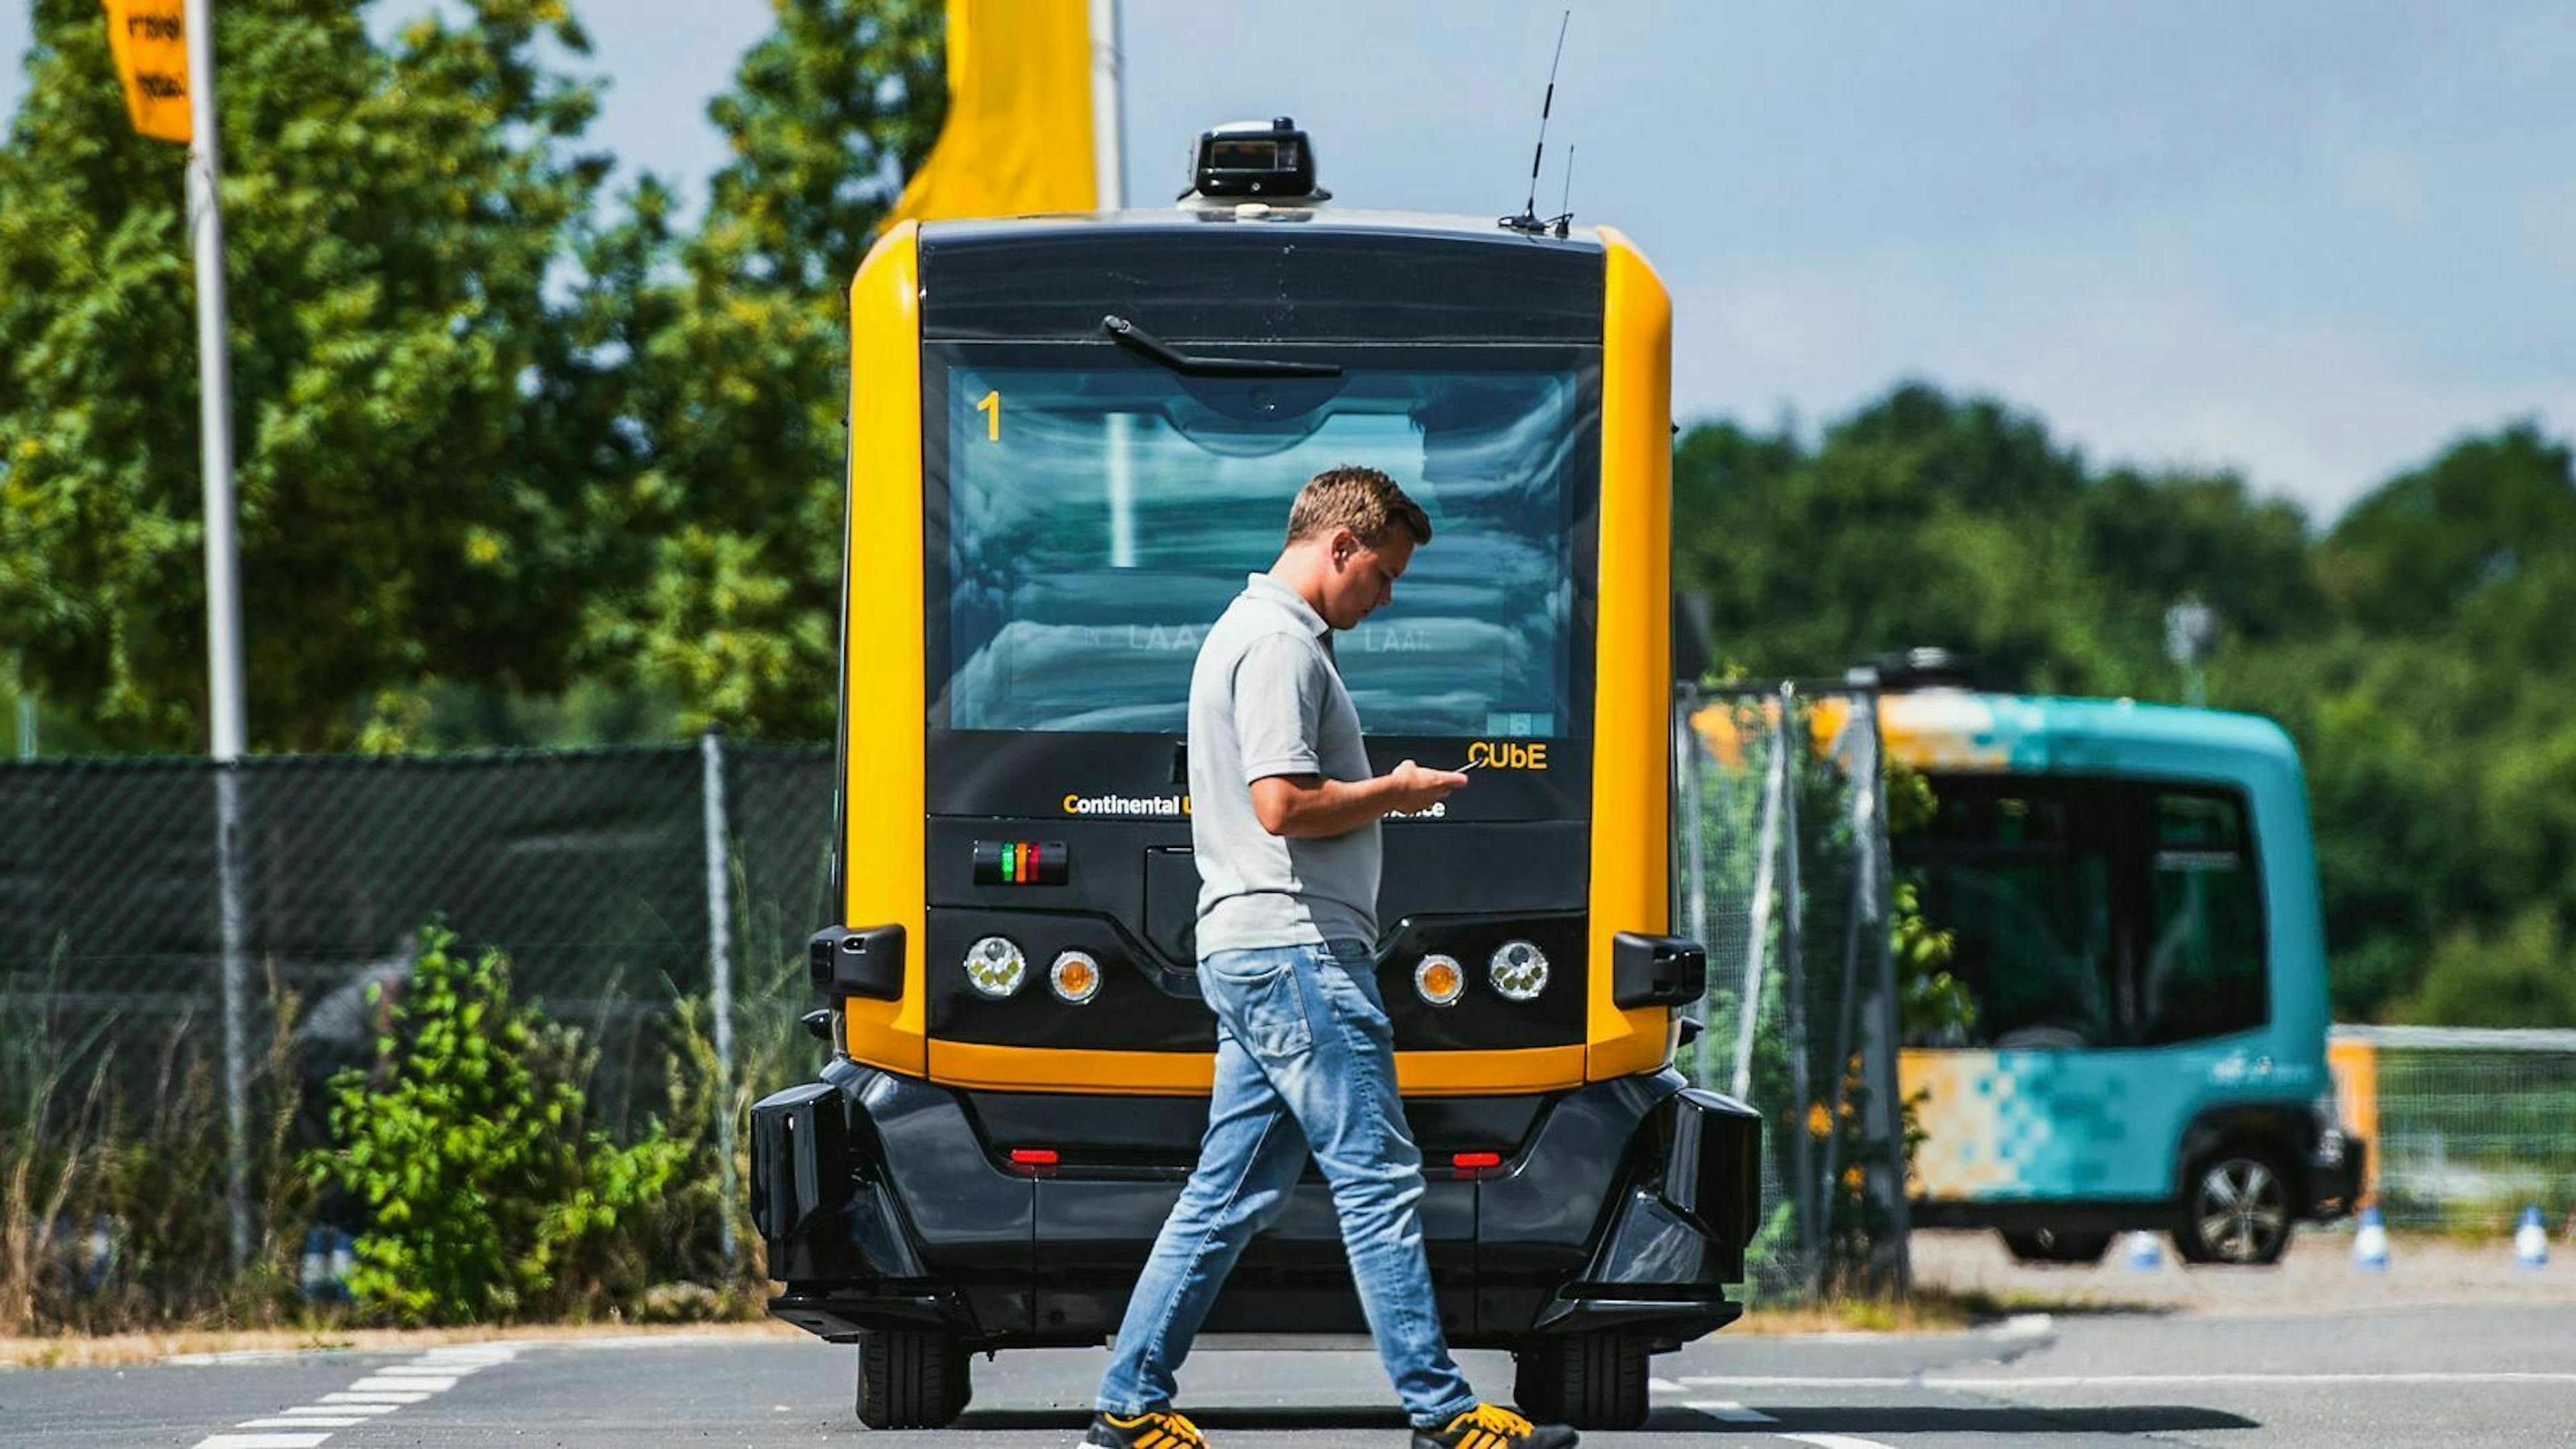 Auf einem Testgeländefährt der autonome Kleinbus Cube von Continental auf einen Mann zu.